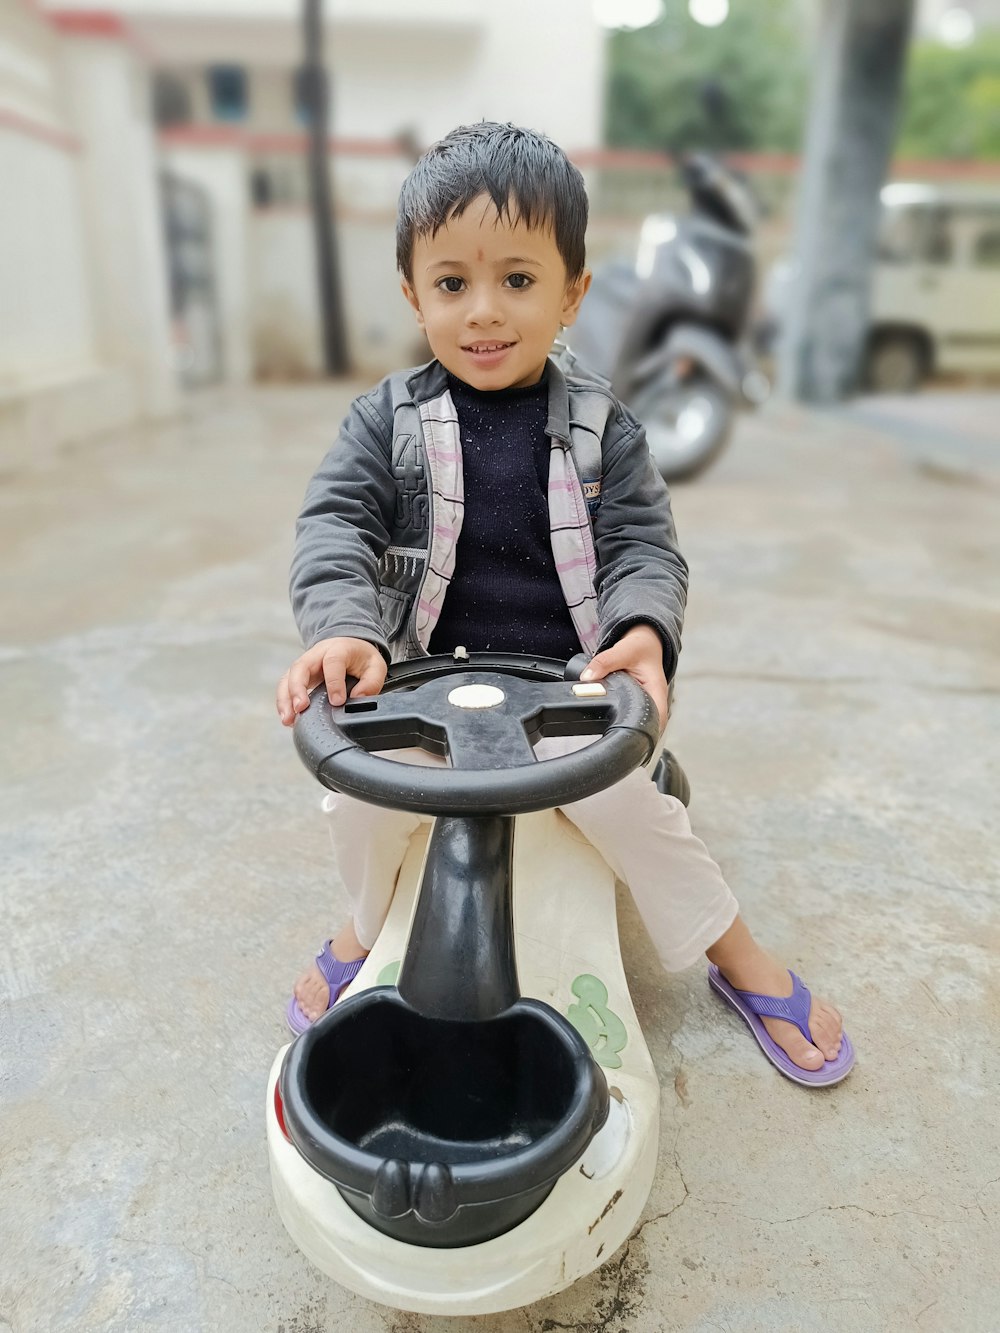 a little boy sitting on a toy car